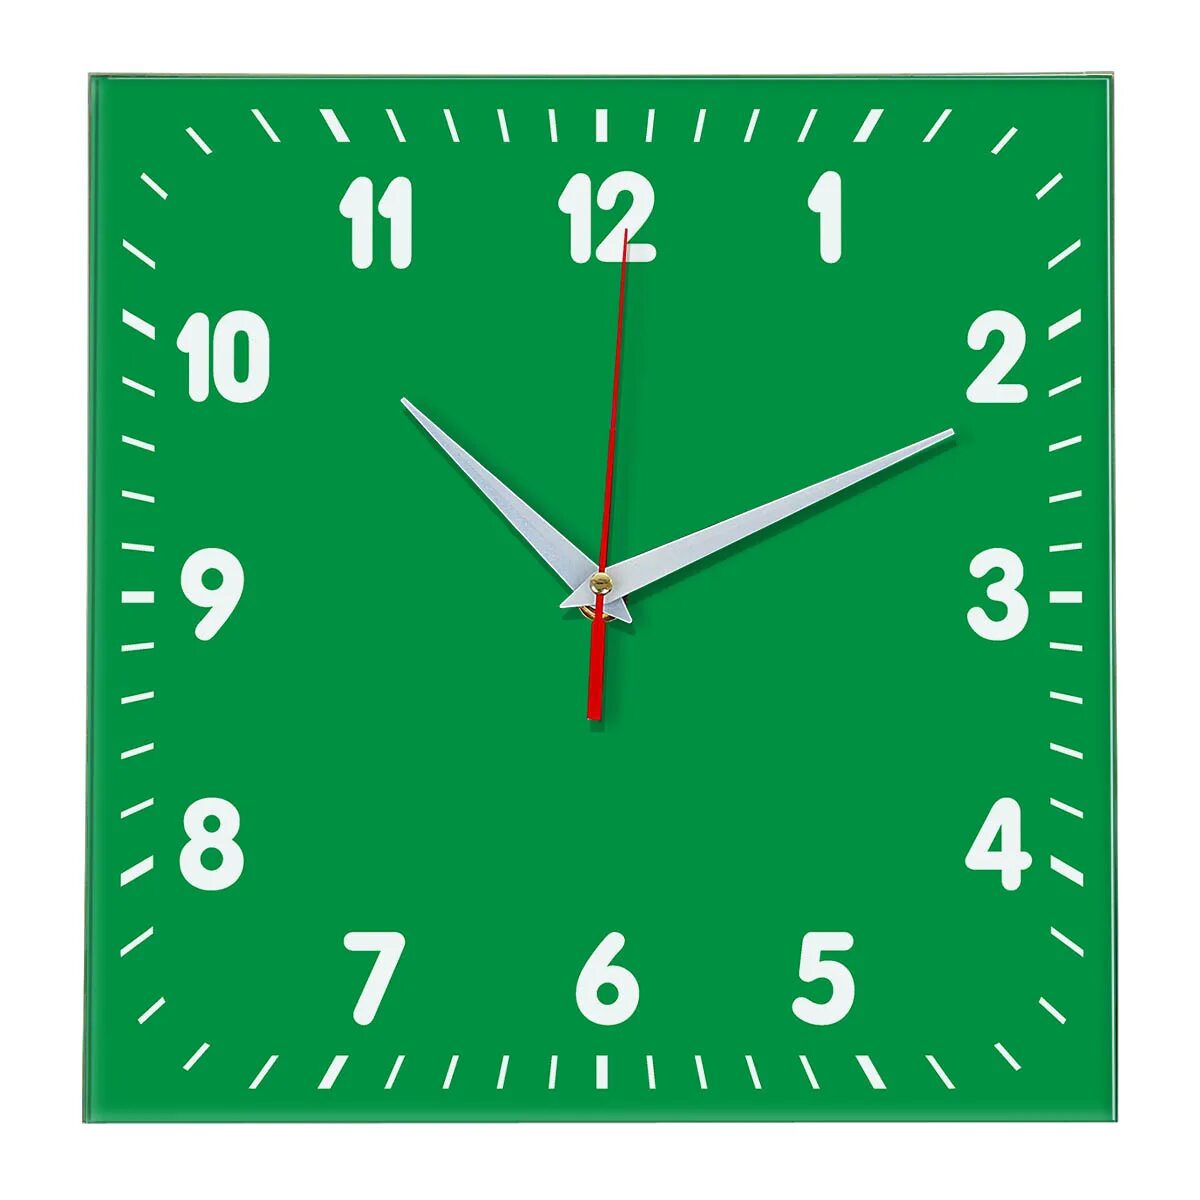 Часы настенные зеленые. Настенные часы ideal 838 зеленый. Часы настенные салатовые. Часы зеленые. Часы настенные квадратные зеленые.